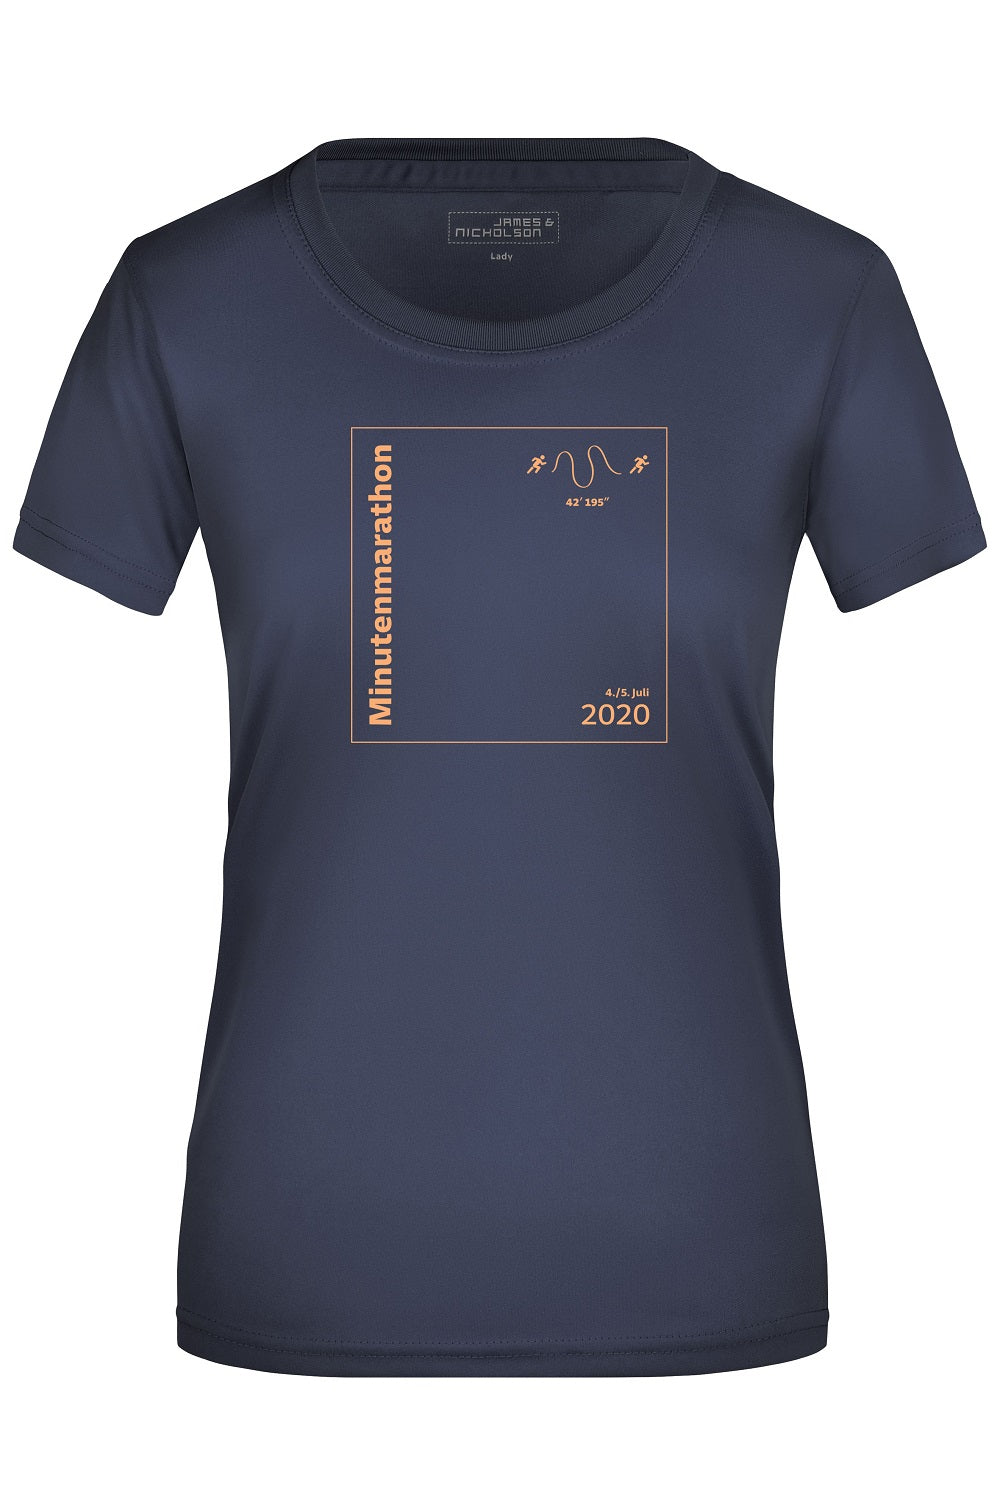 S - Damen SZ Laufshirt, blau, Minutenmarathon - Bild 1